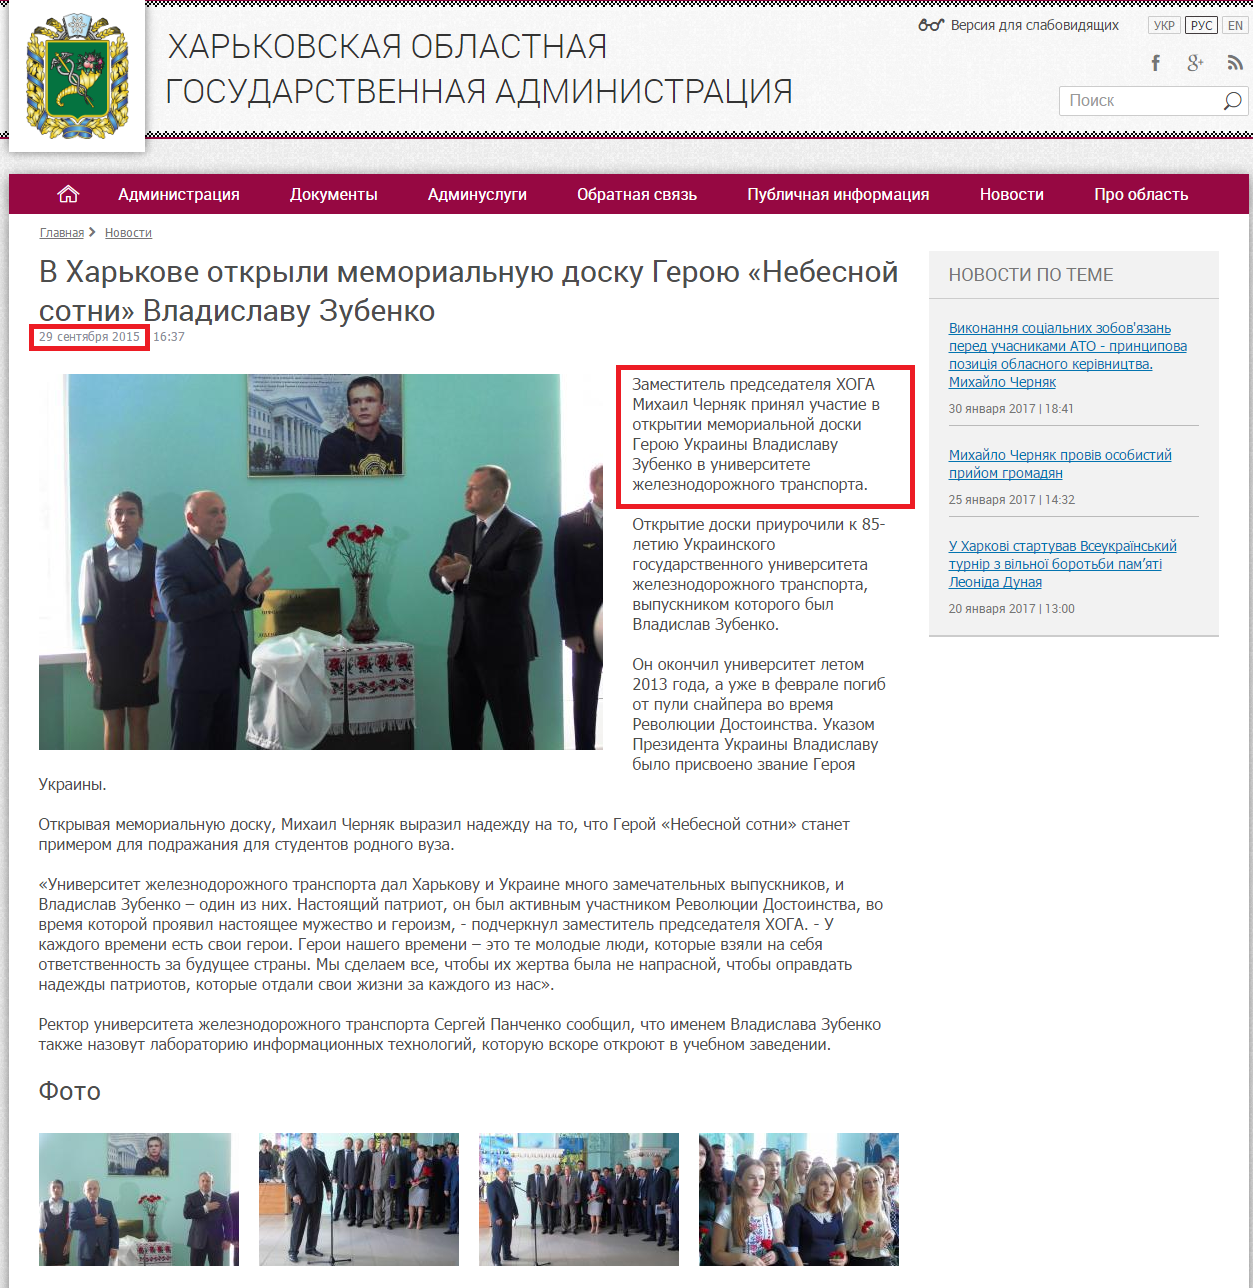 http://kharkivoda.gov.ua/ru/news/76363